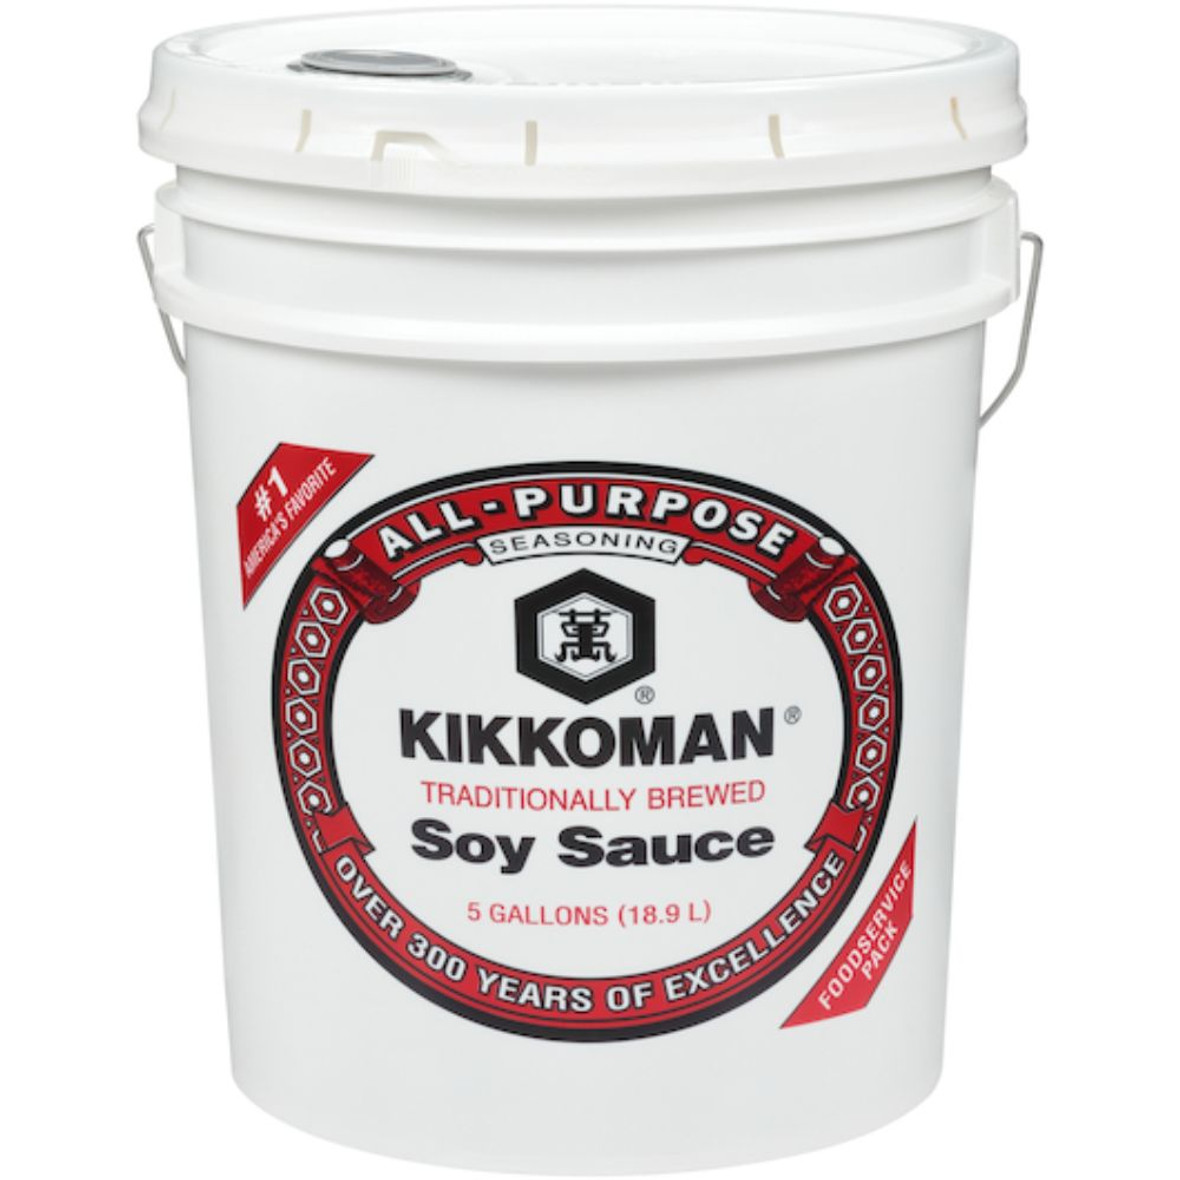 Kikkoman Soy Sauce, 5 Gallons